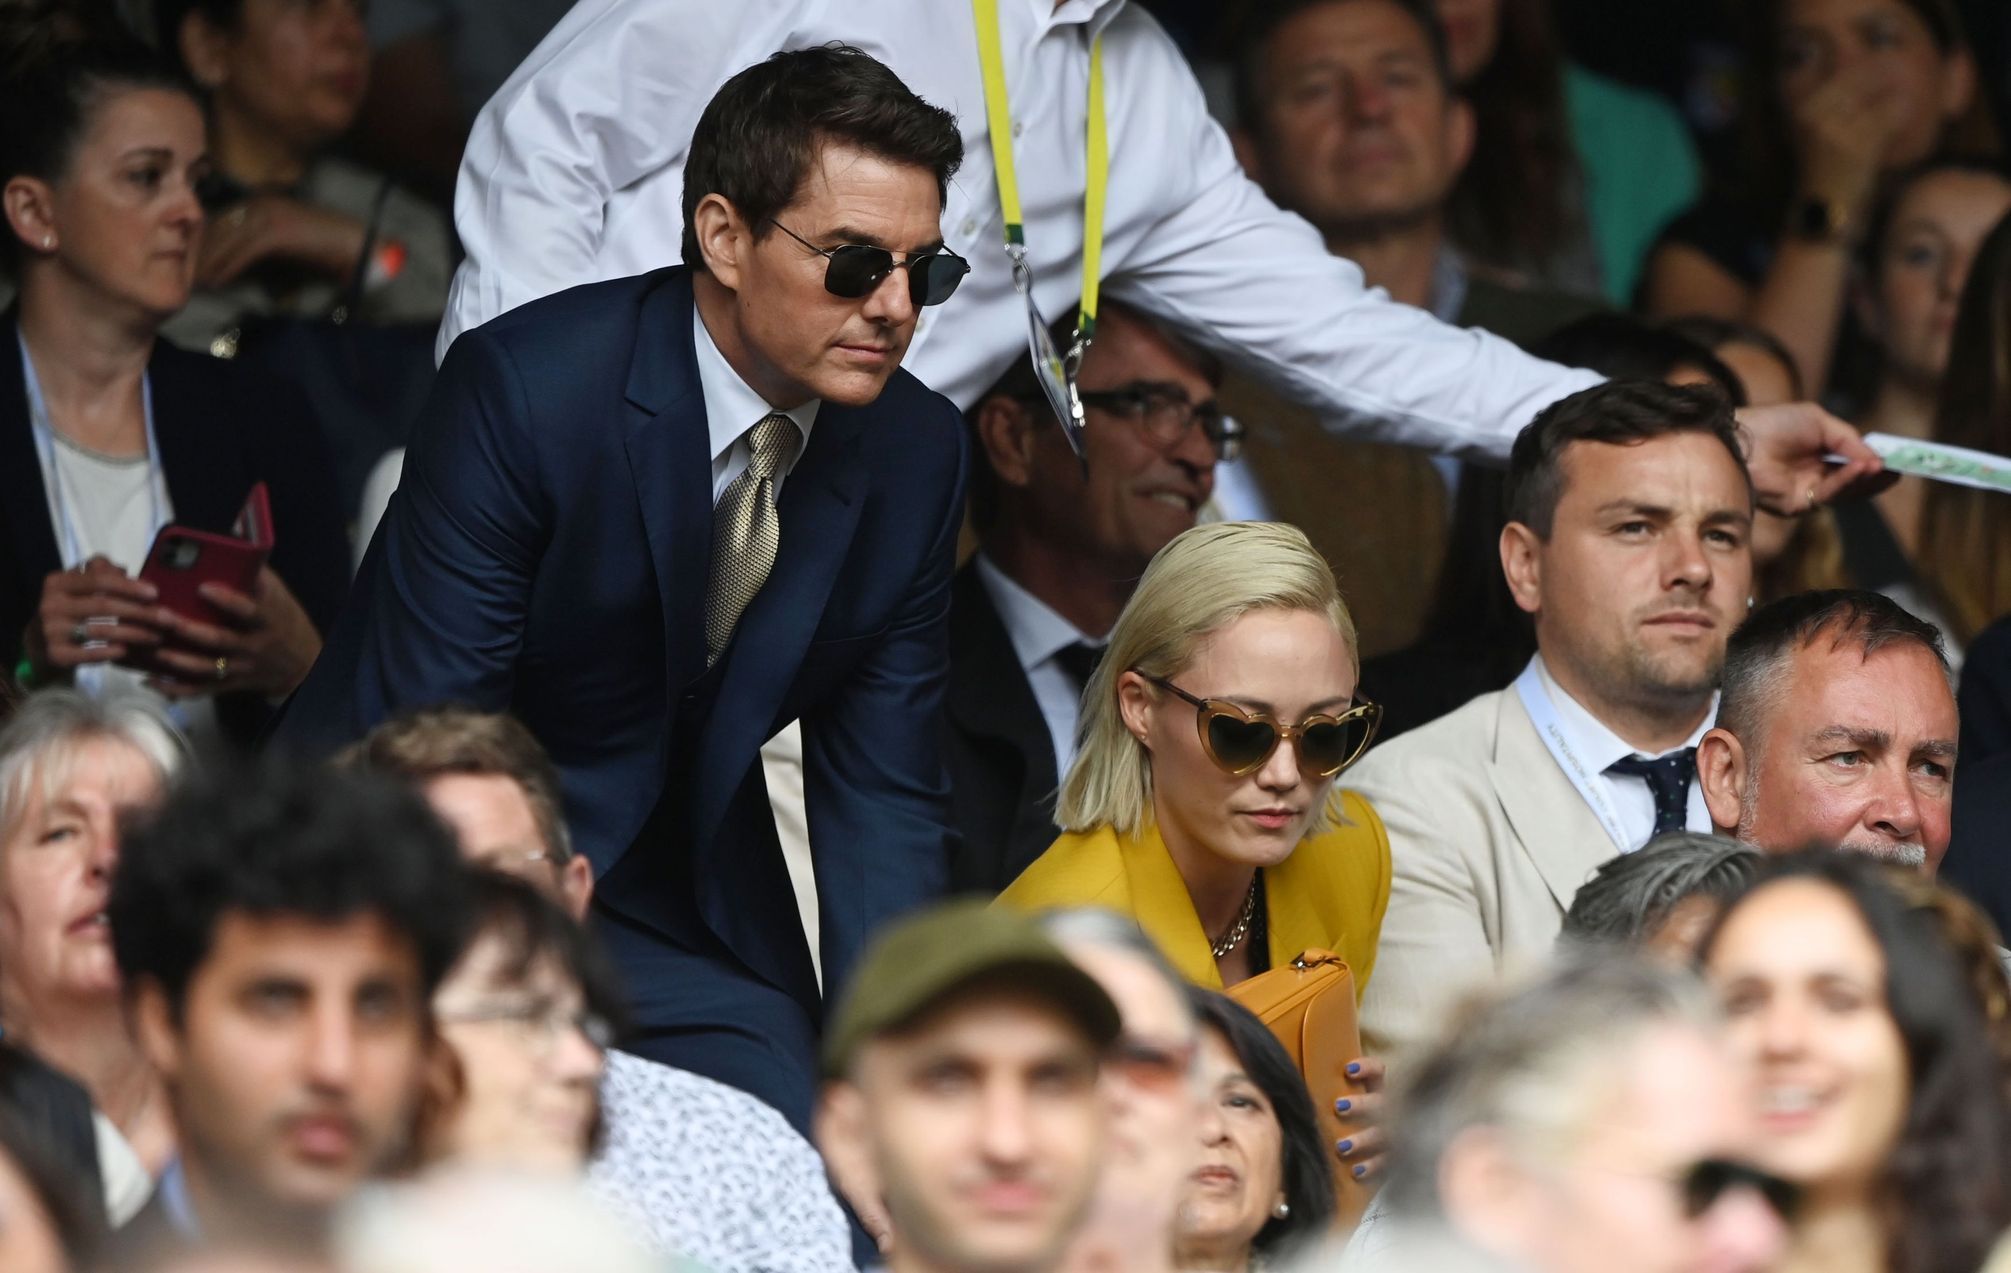 Tom Cruise v hledišti finále Wimbledonu 2021 Karolína Plíšková - Ashleigh Bartyová.